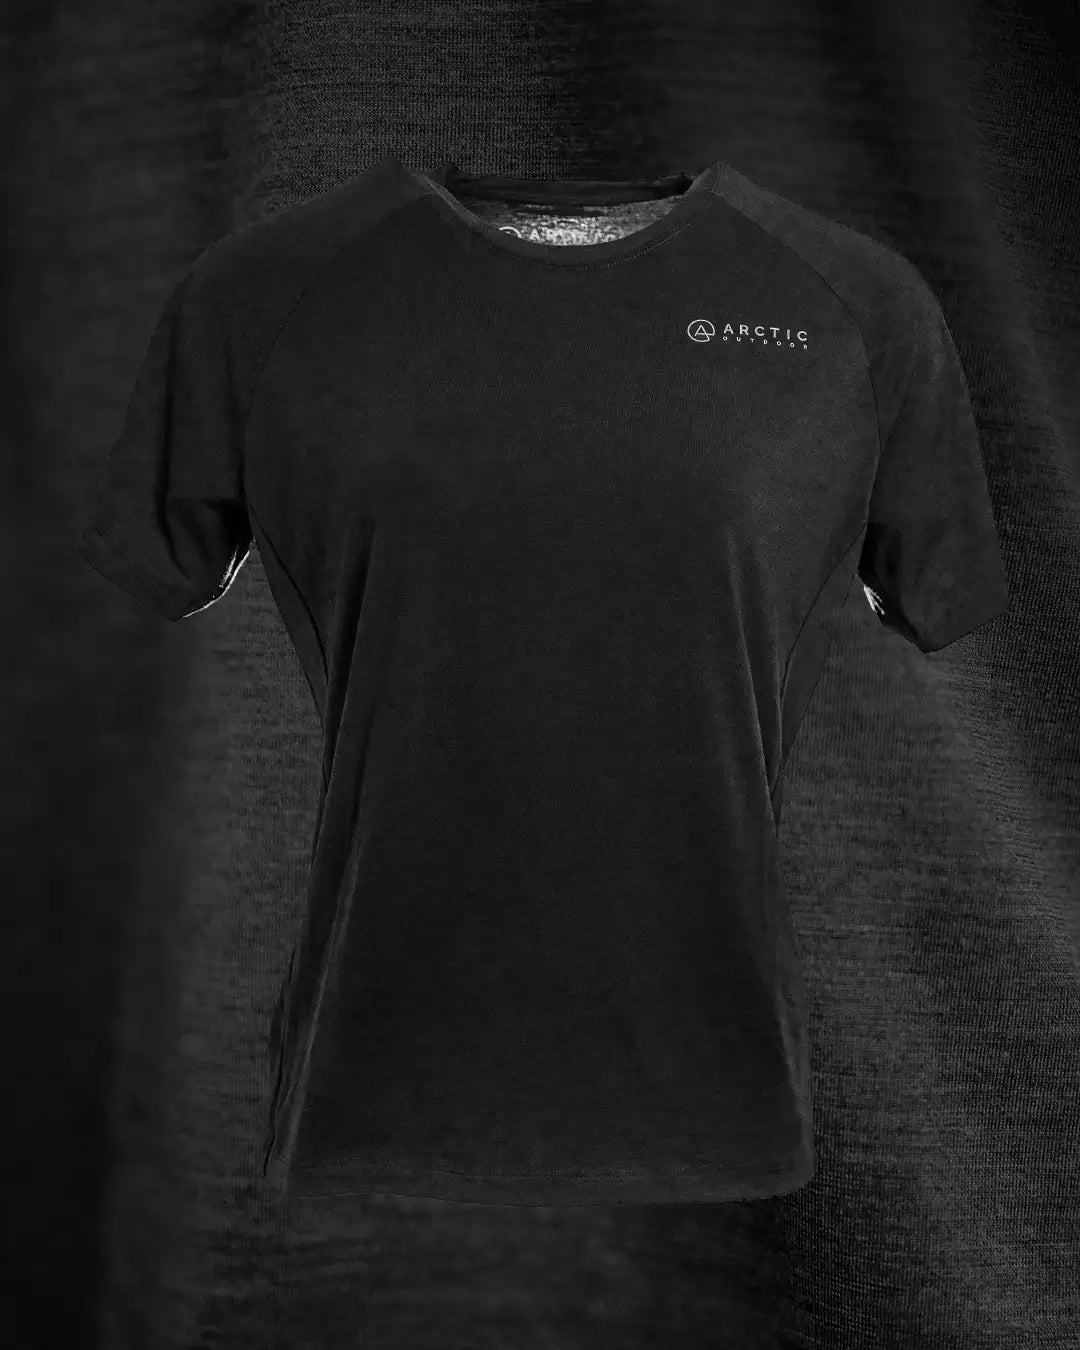 Produktbillede af sort merino uld t-shirt